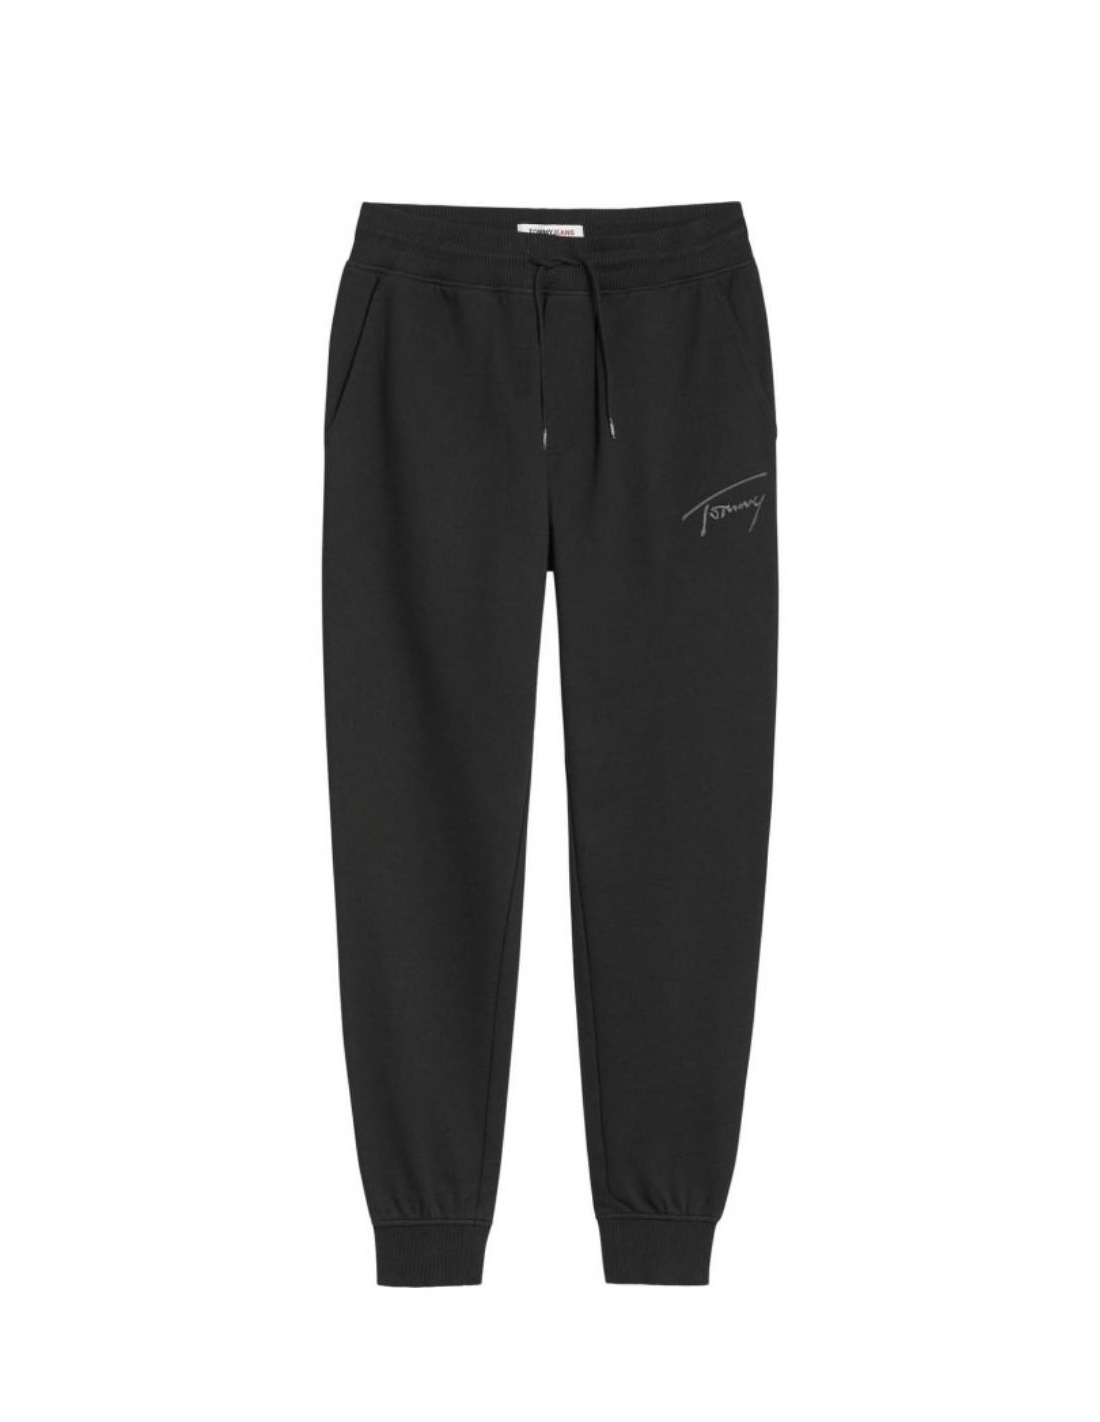 Pantalon de jogging homme Tommy Jeans noir - Pallas cuir